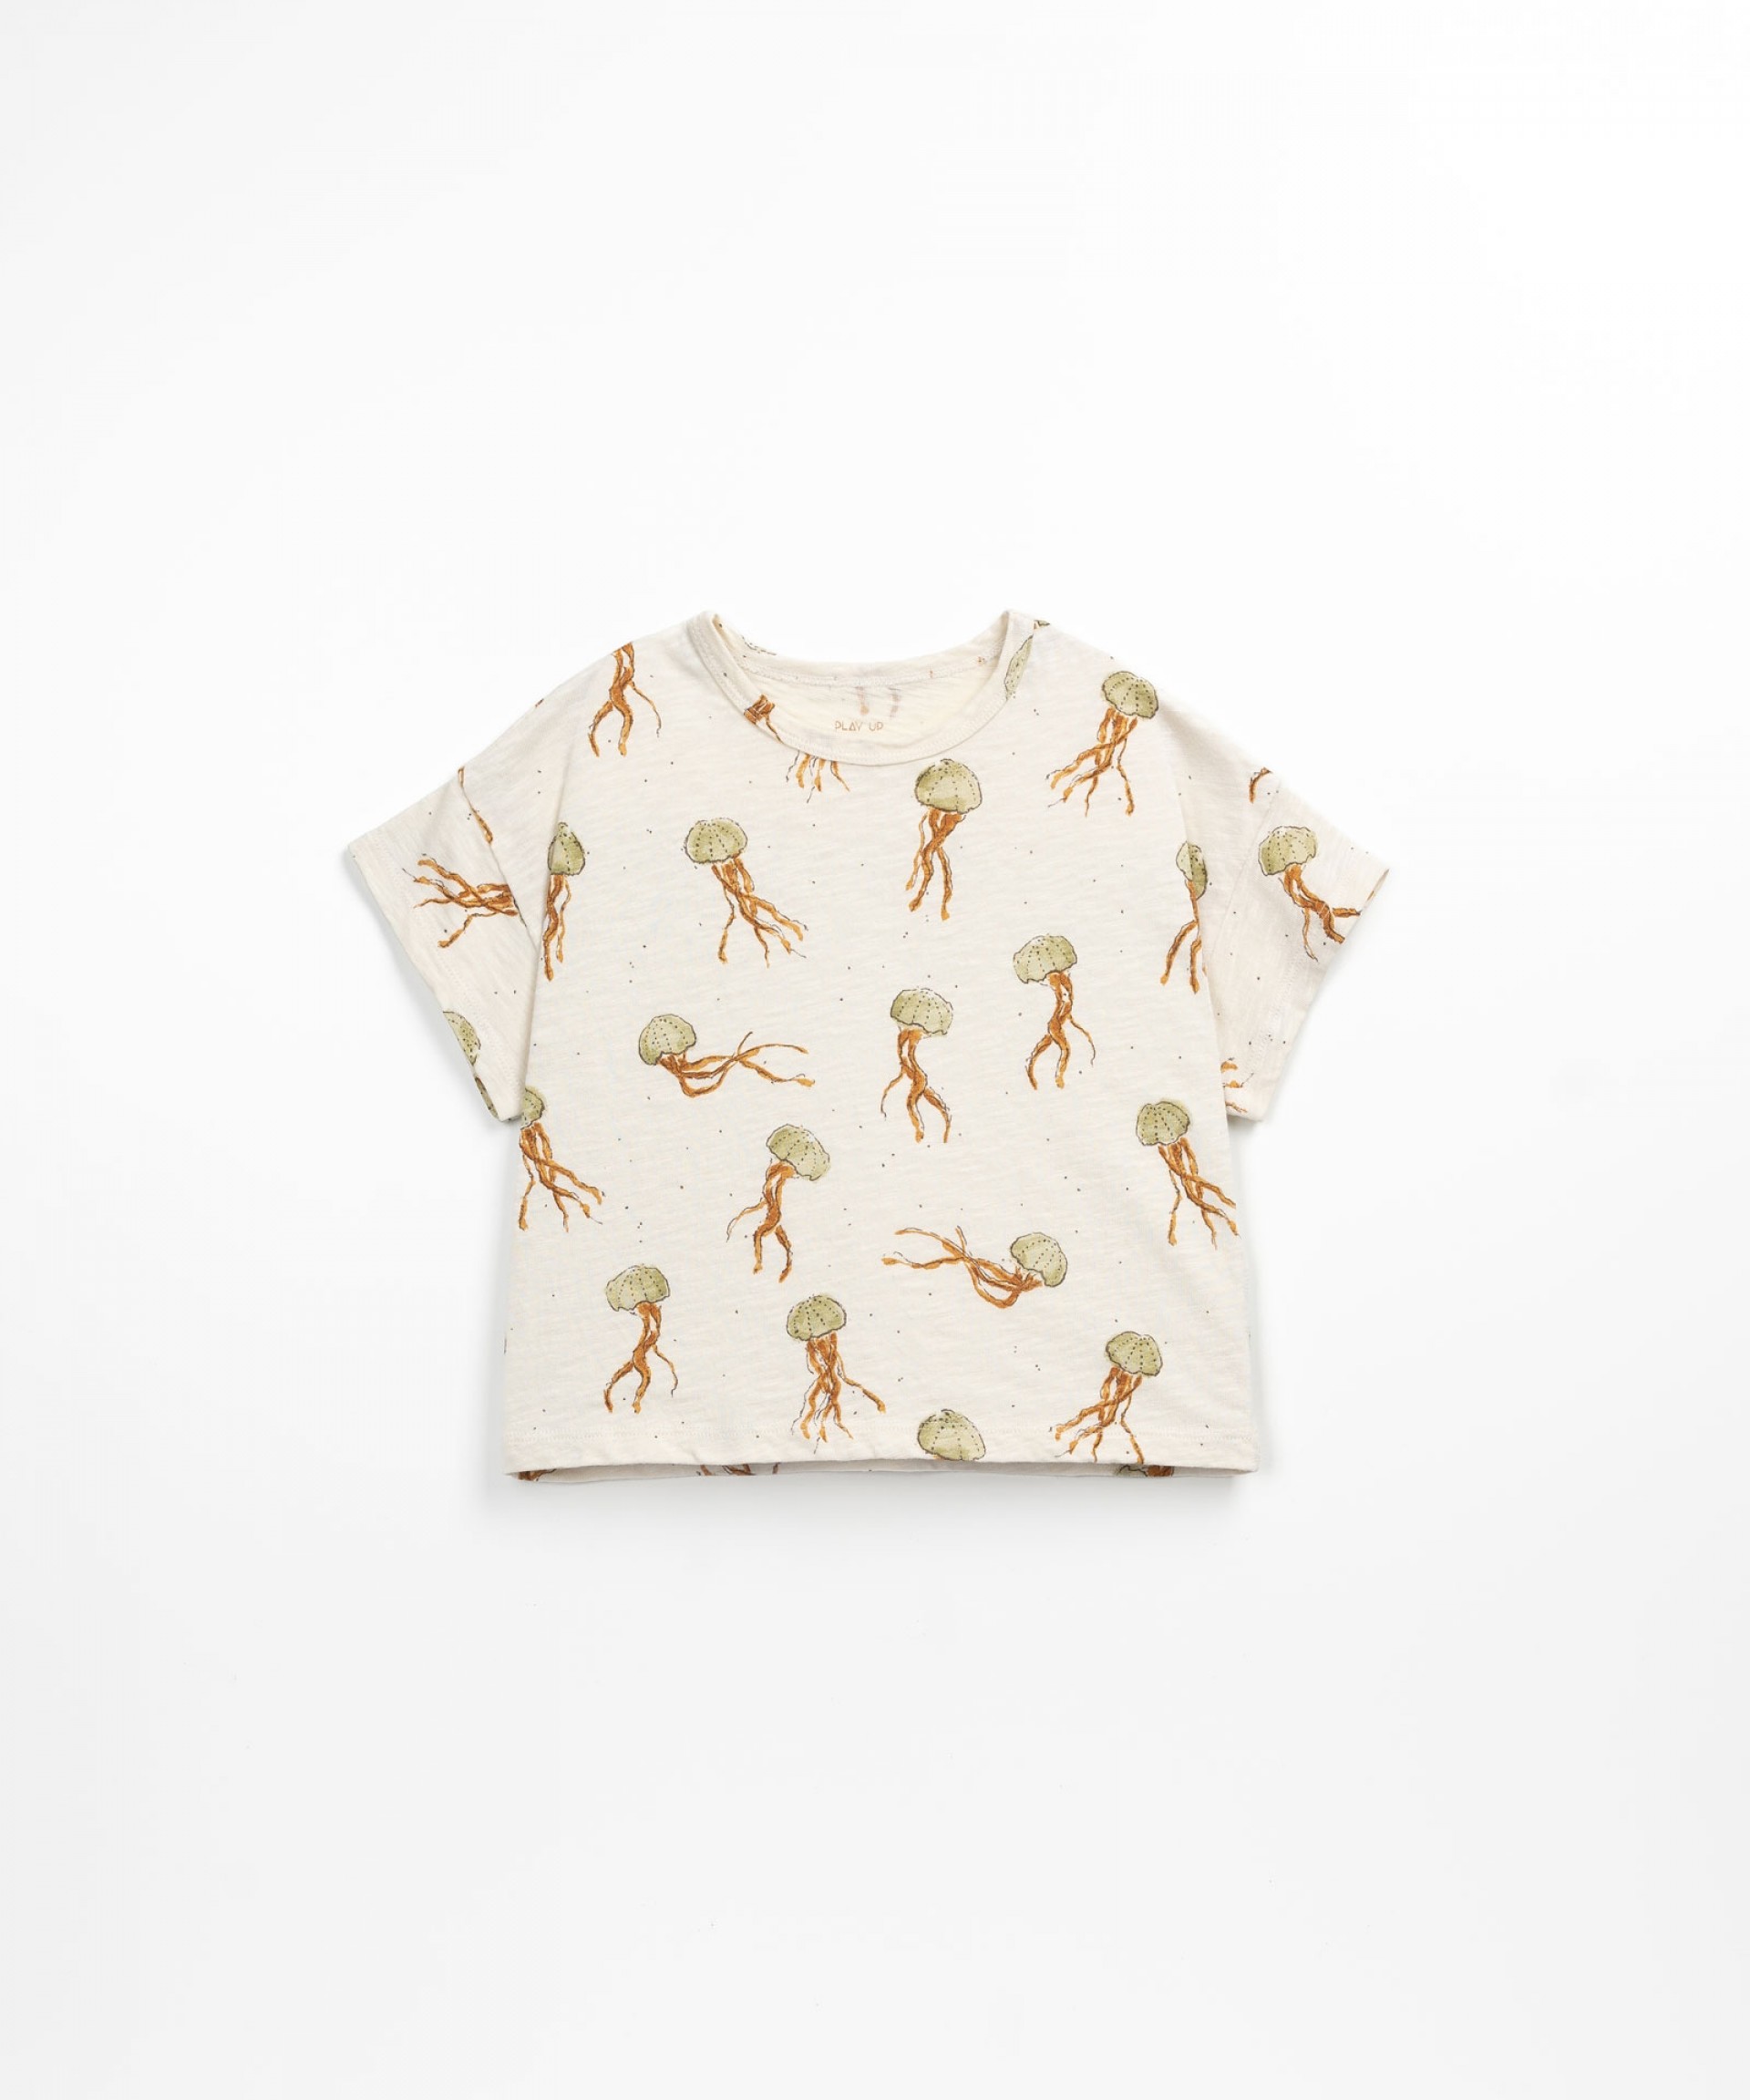 T-shirt en coton biologique avec des mduses | Textile Art